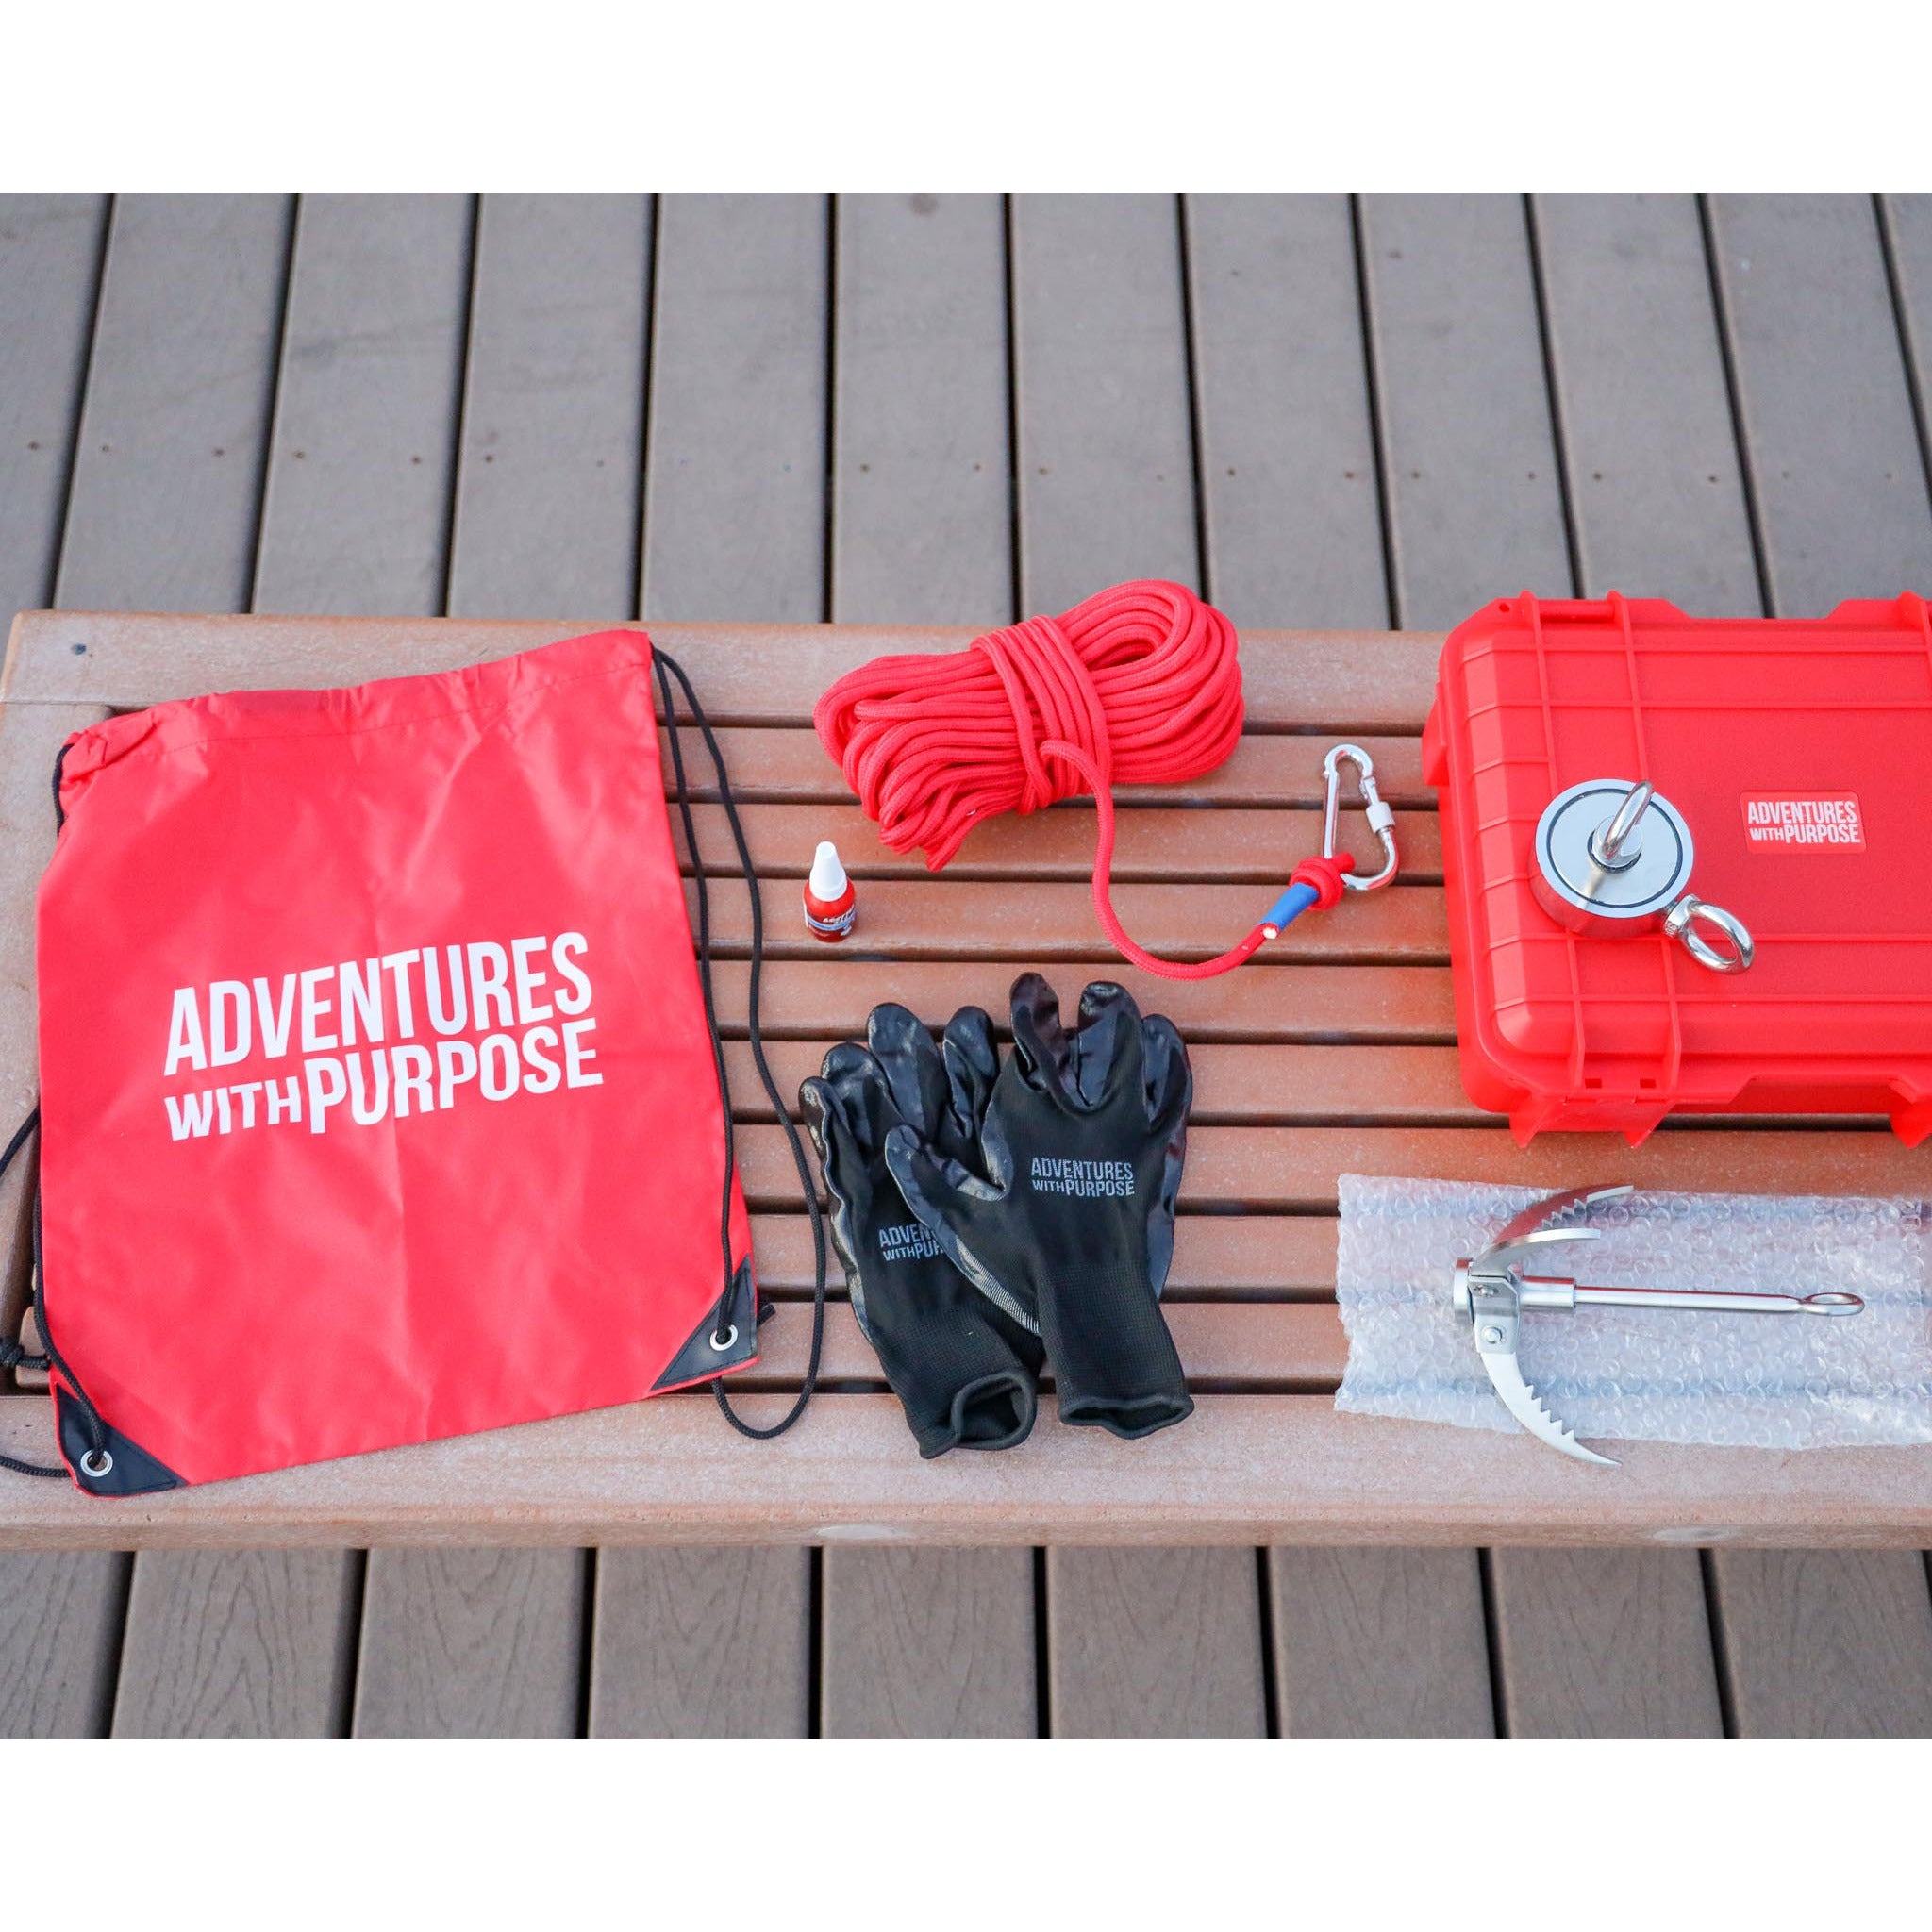 Fishing Tackle Kits - Bundles and Kits